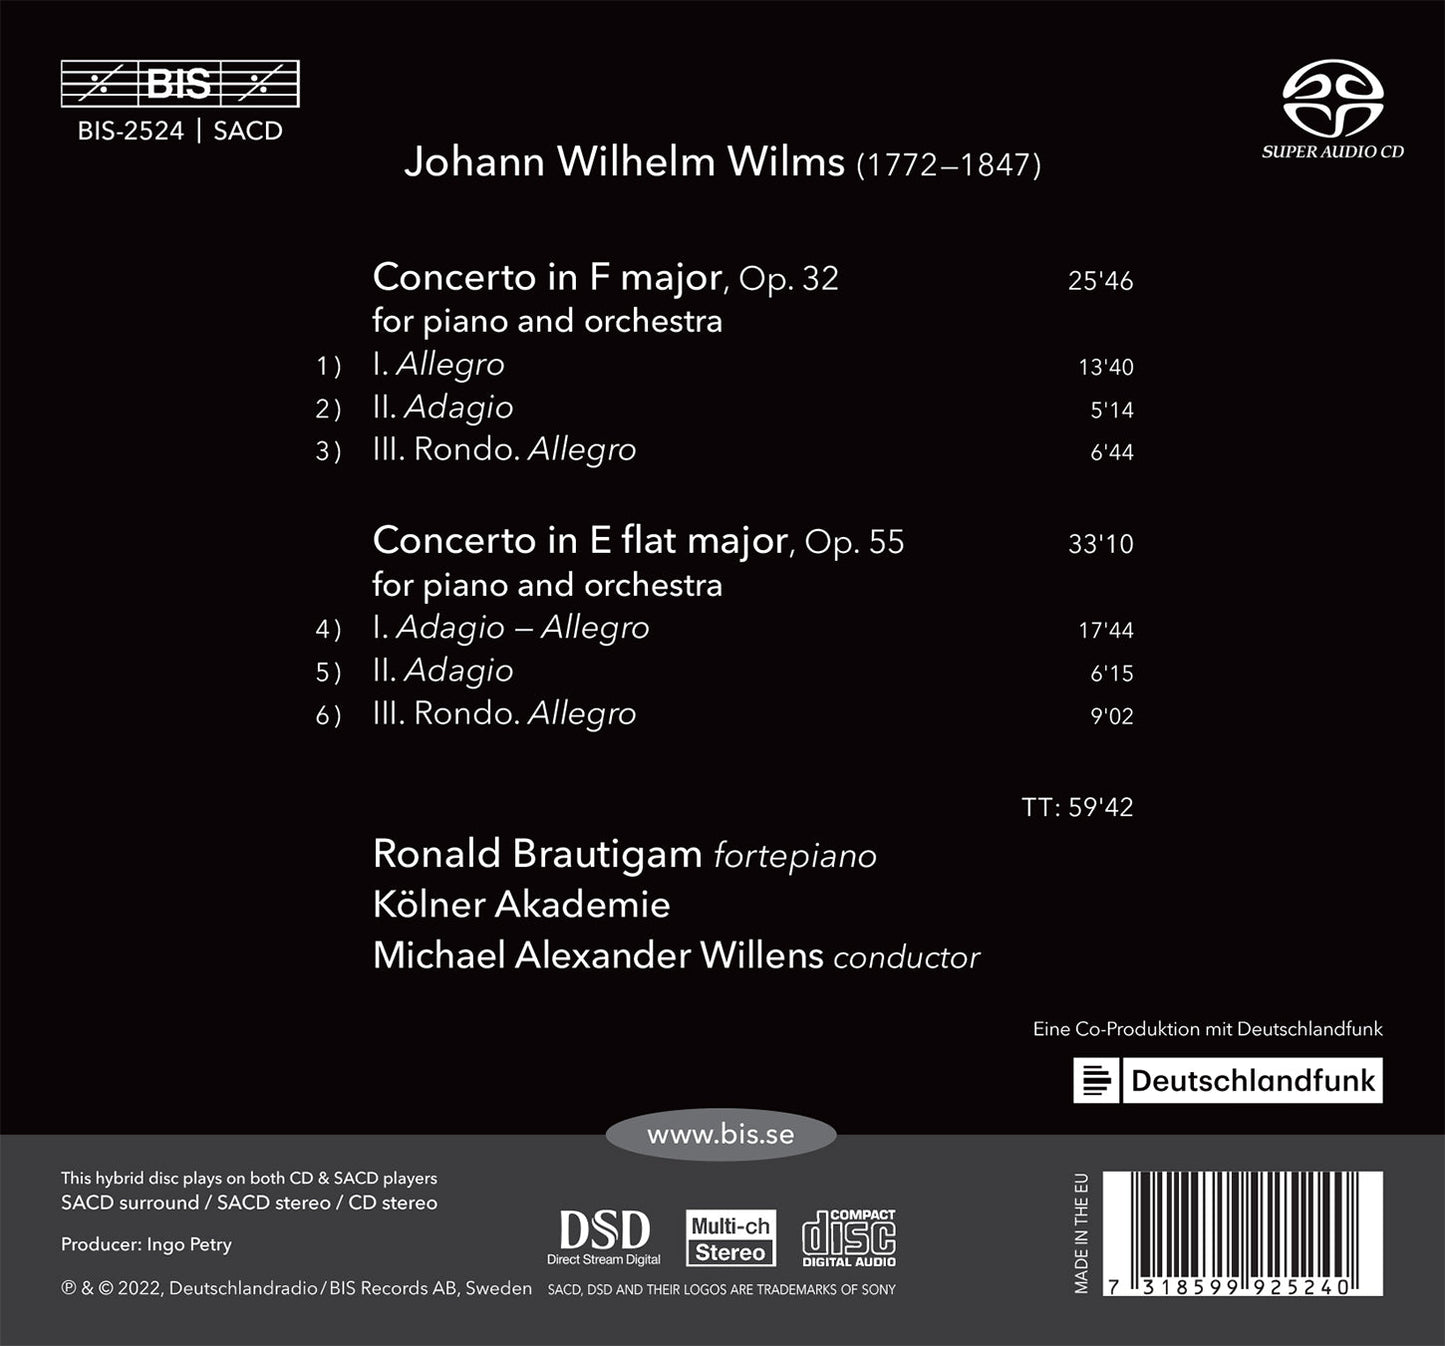 Wilms: The Piano Concertos, Vol. 2